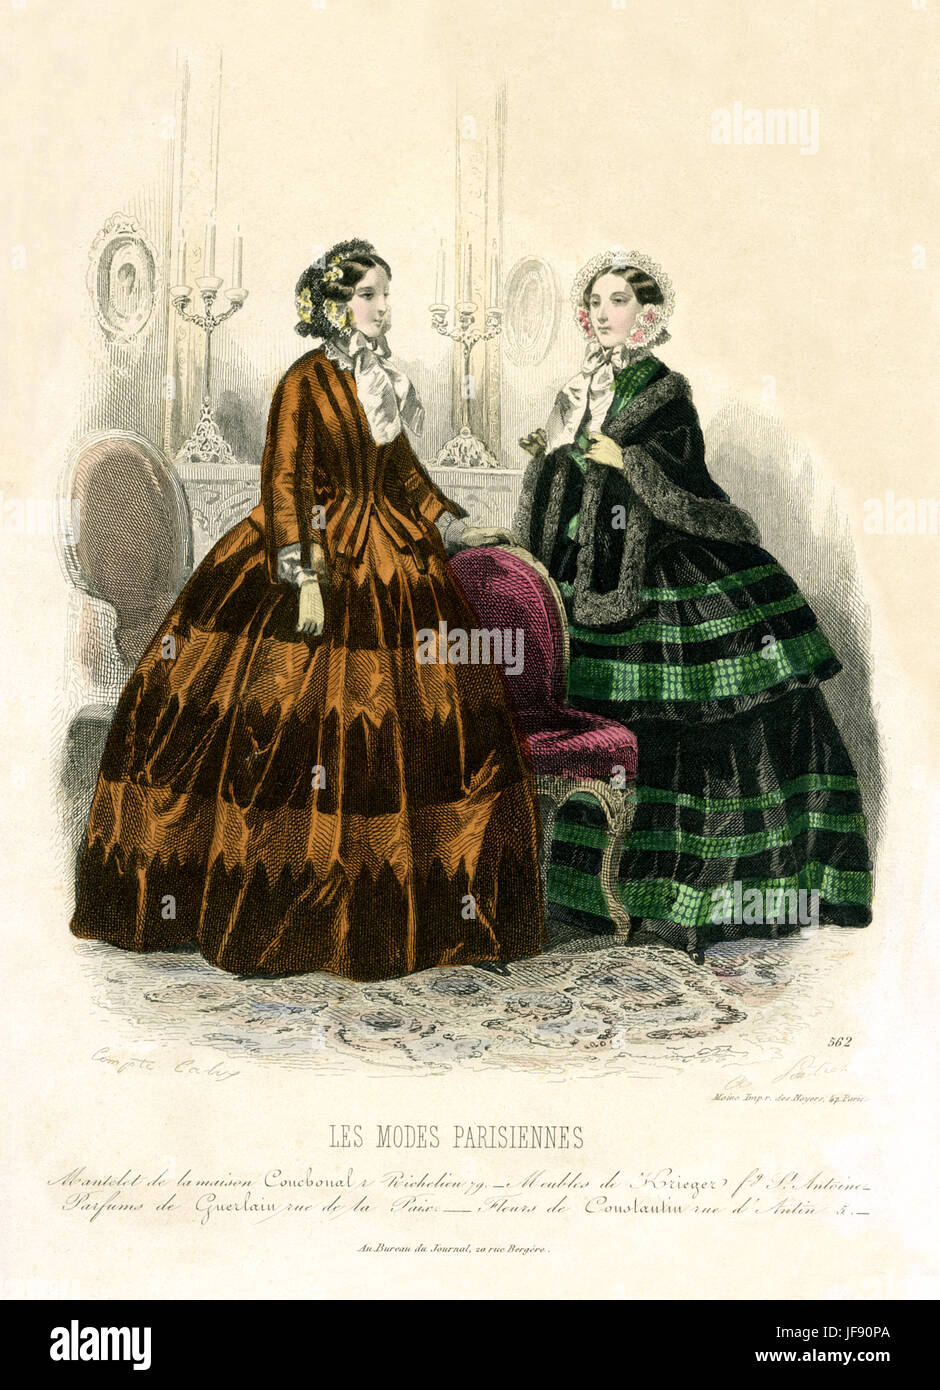 Paris Fashion, 19. Jahrhundert. Zwei Frauen in Motorhauben mit Band gebunden und mit Blumen geschmückt. Volle Kleider Schürzen / passende Jacke. Eine Frau trägt Pelz getrimmt Schal. Les Modi Parisiennes Stockfoto